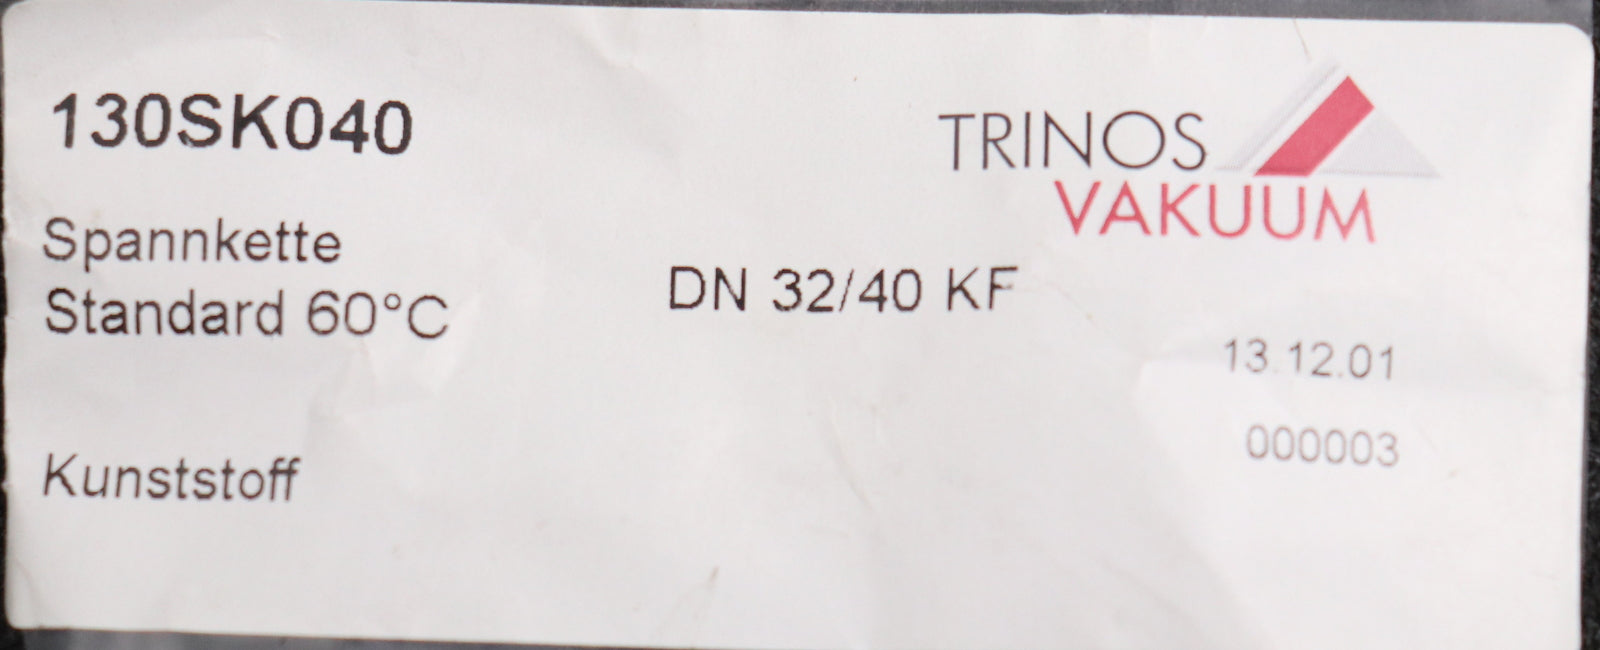 Bild des Artikels TRINOS-VAKUUM-Spannketten-Standard-60°C-Kunststoff-Typ-130SK040-DN32/40KF